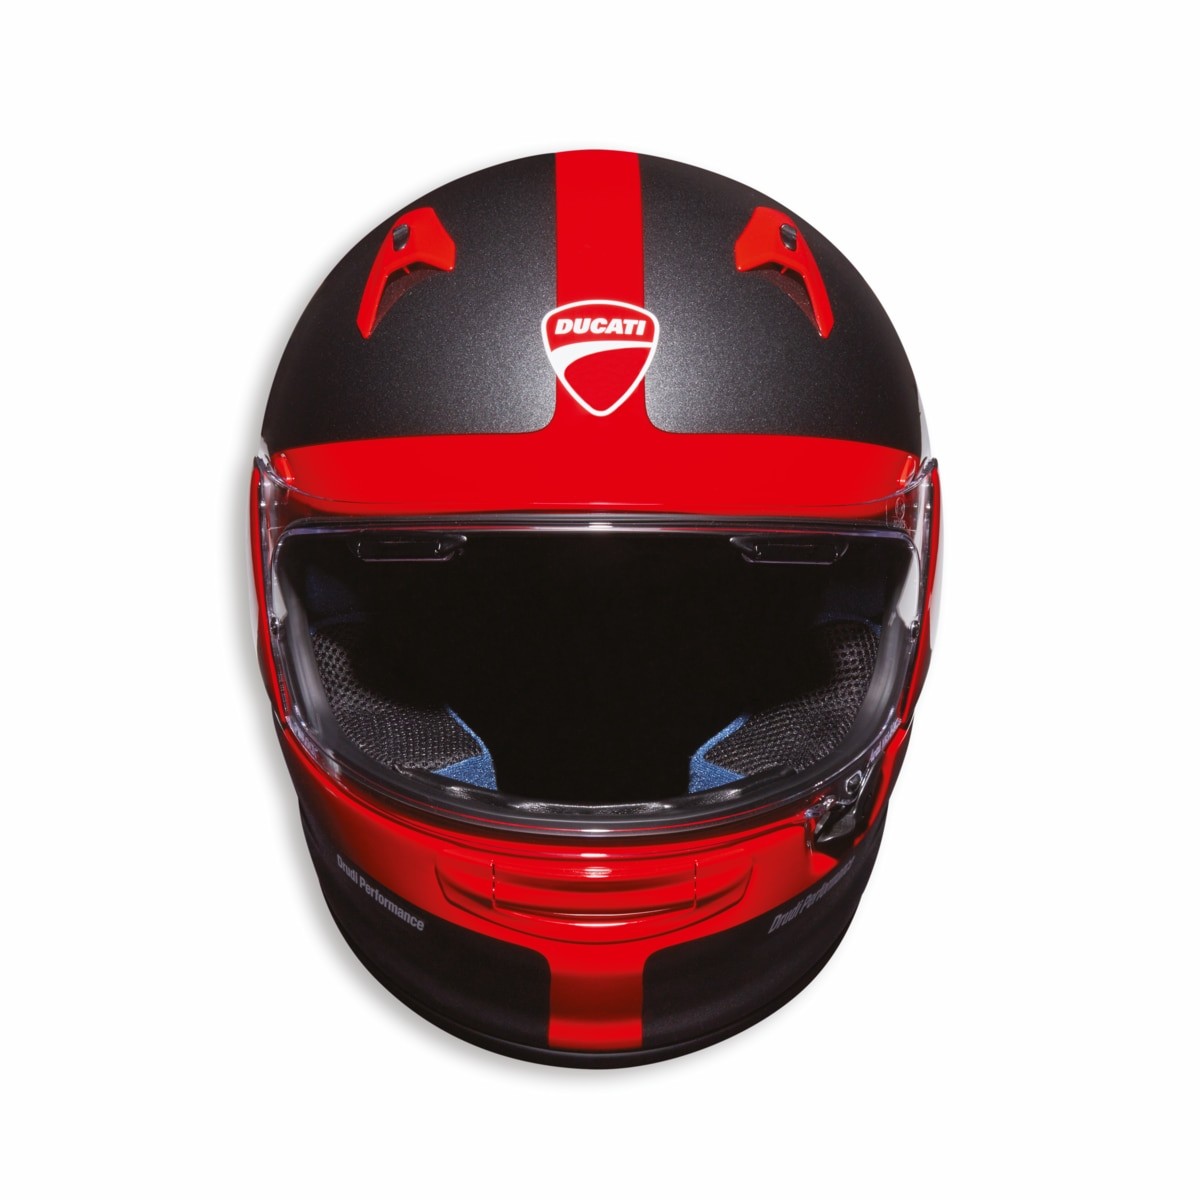 D-Rider - Full-face helmet